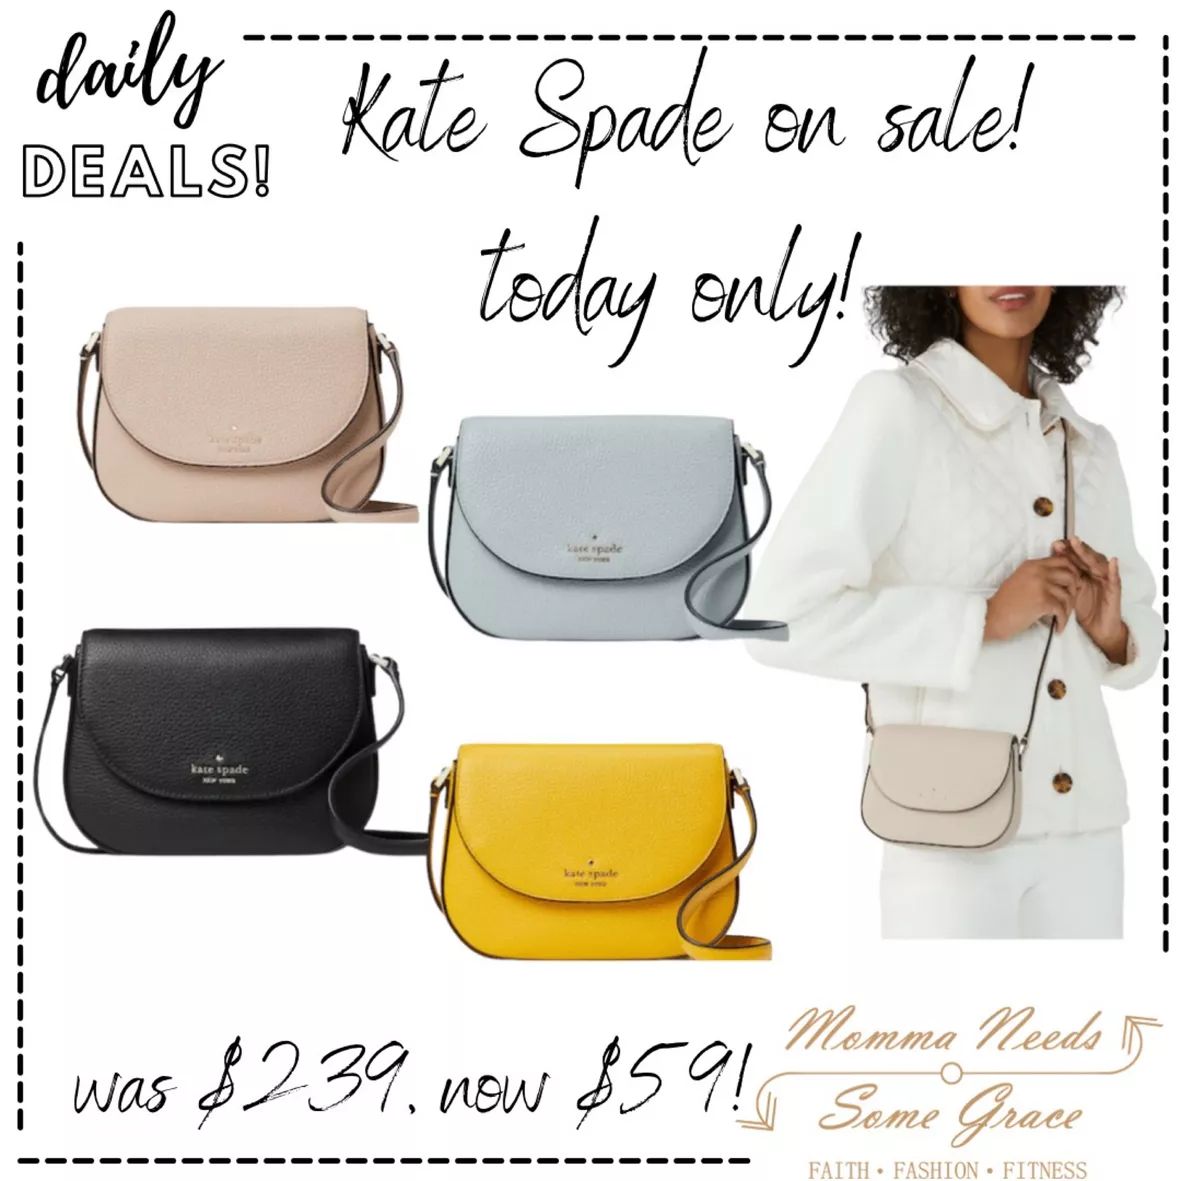 Kate Spade Leila Mini Flap Crossbody: Handbags